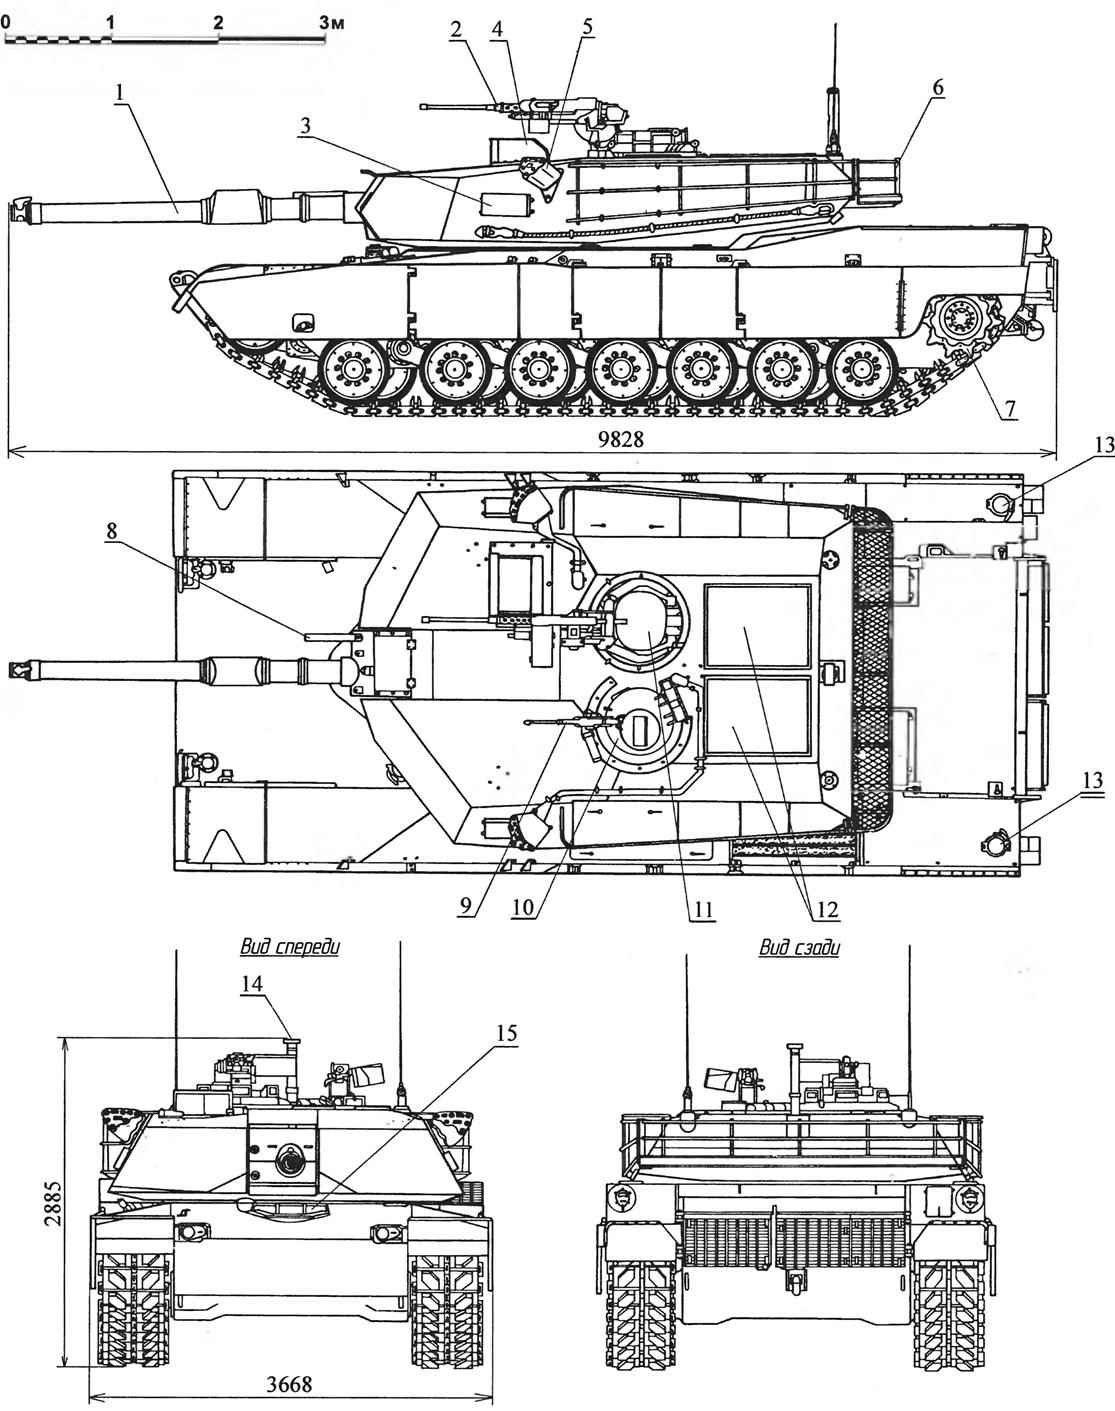 Американский танк abrams-абрамс поставки на украину модификации  м1, м1а1, м1а2| сравнение, вооружение, броня, фото